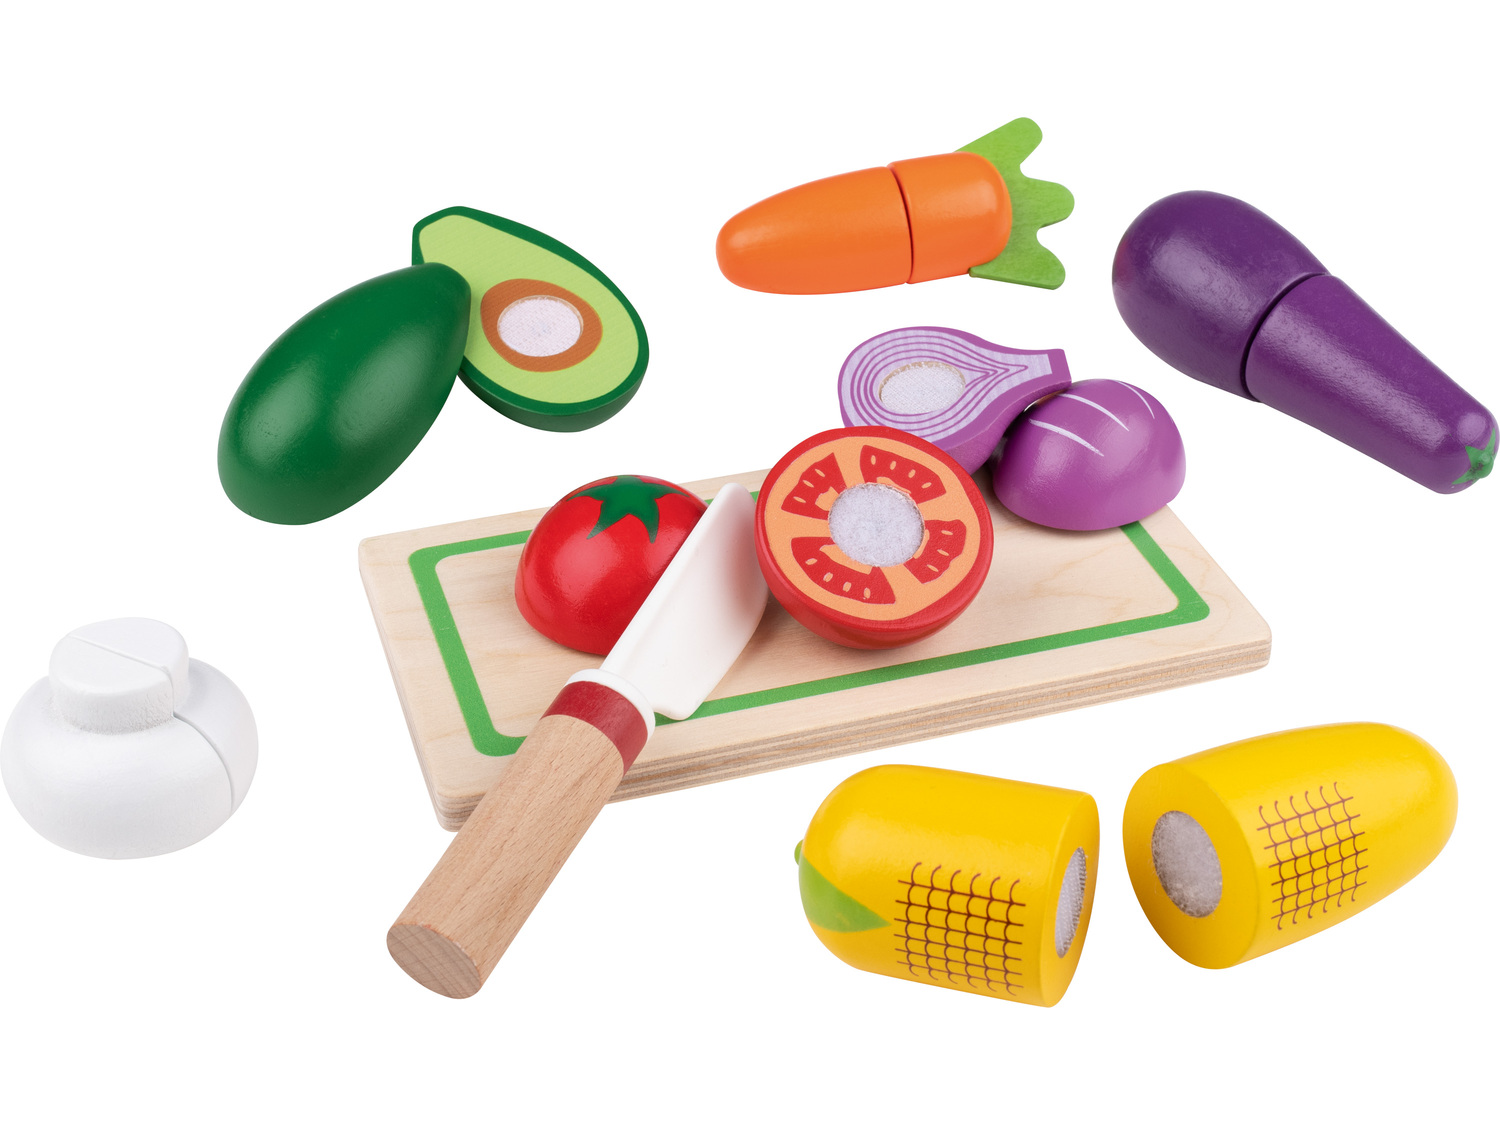 Zestaw jedzenia dla dzieci do zabawy Playtive, cena 29,99 PLN  

Opis

- 2+